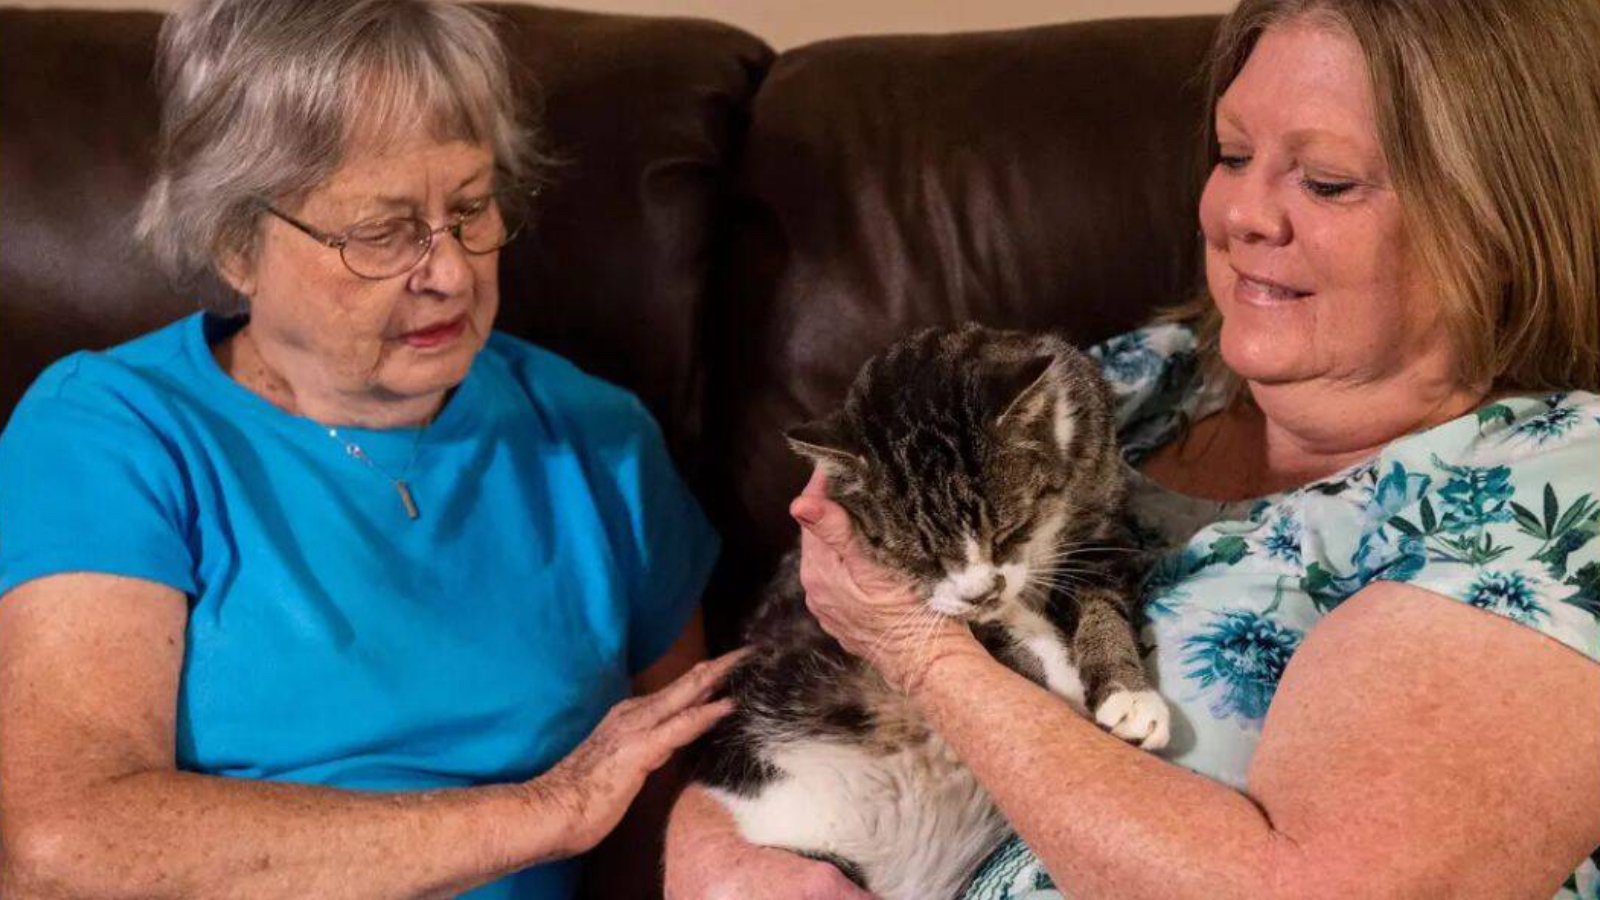 Alabama'da iki kadın sokak kedilerini besledikleri ve kısırlaştırmaya çalıştıkları için ceza aldı